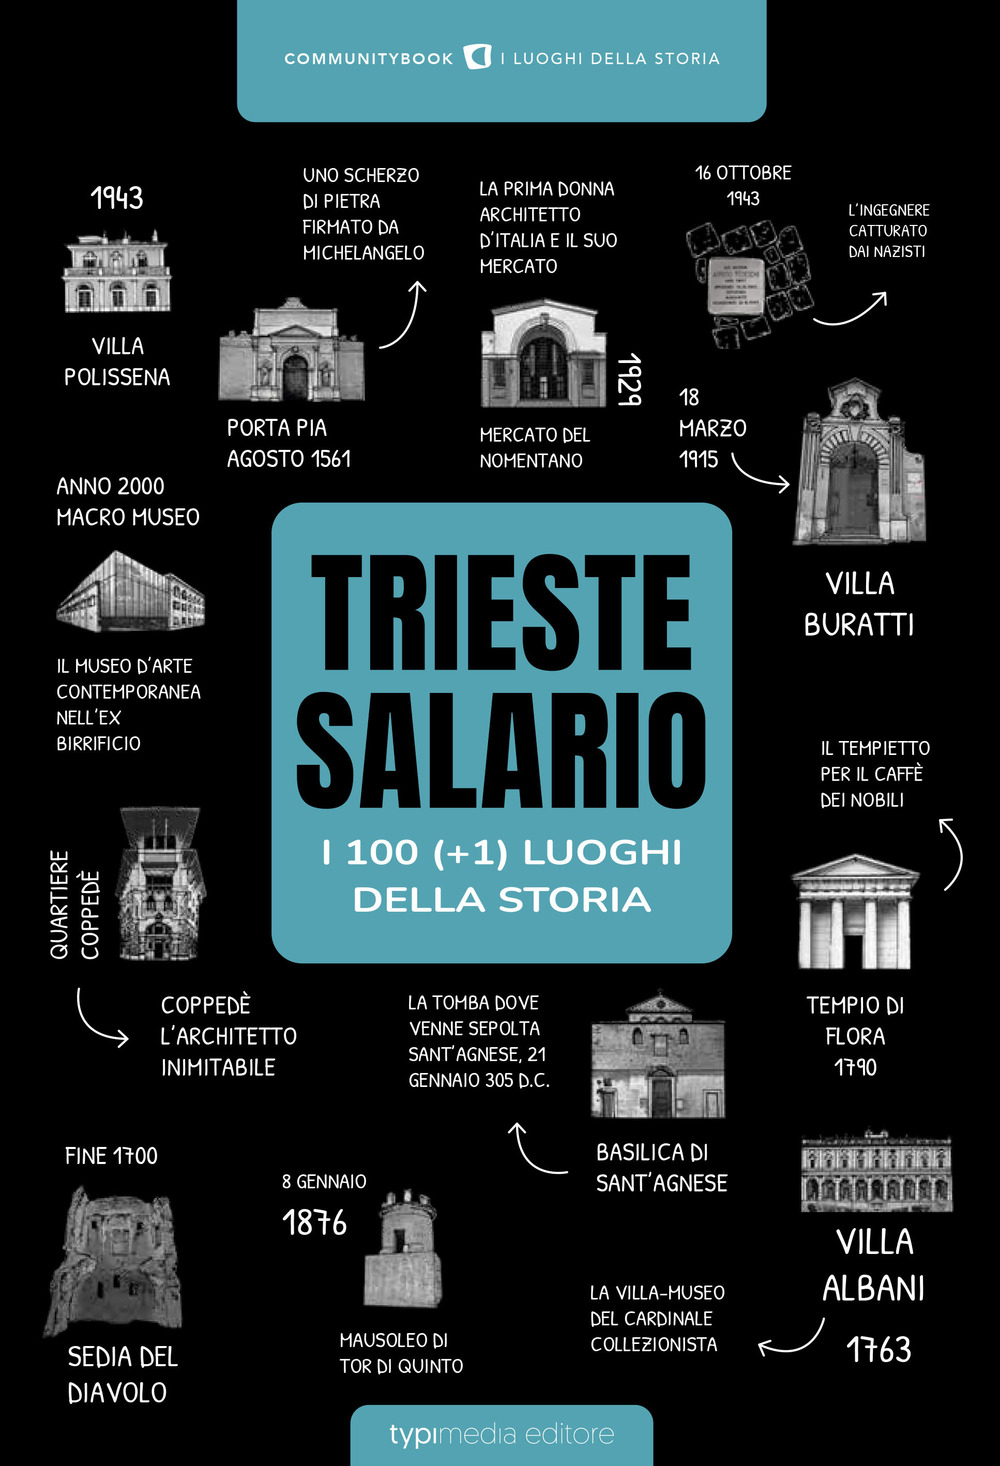 Trieste-Salario: i 100 luoghi della storia (+1)